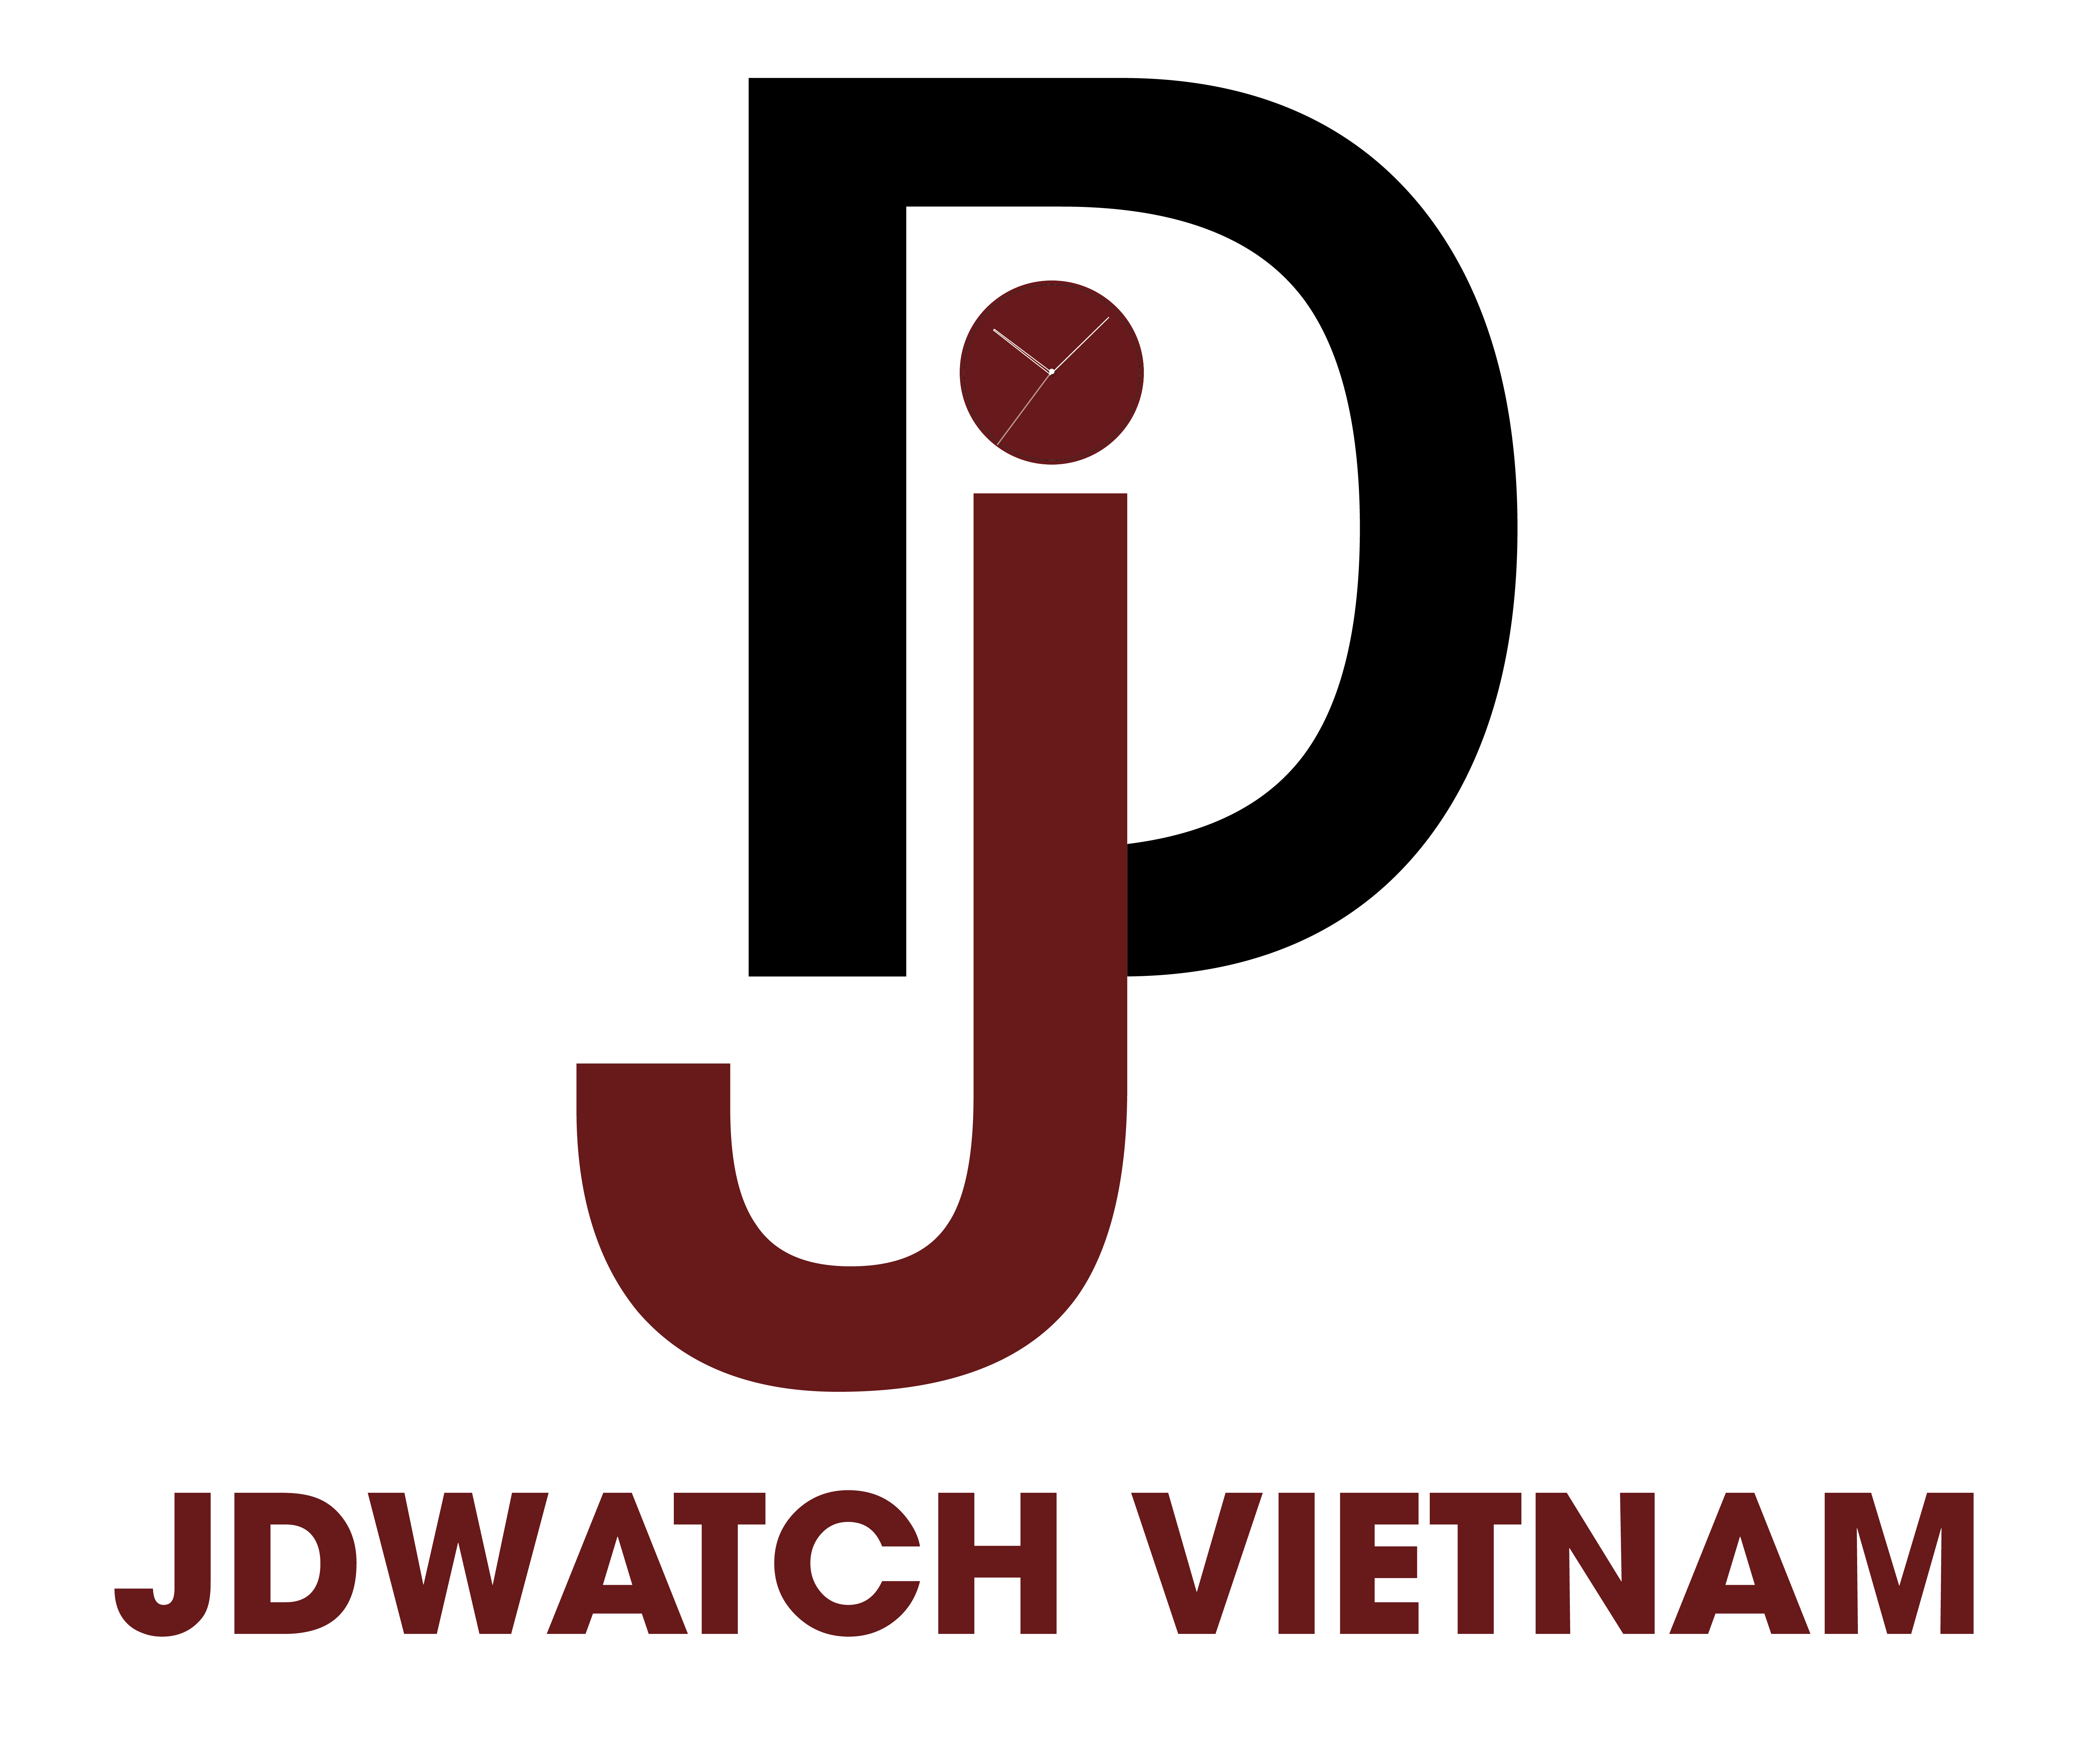 JDWATCH VIETNAM